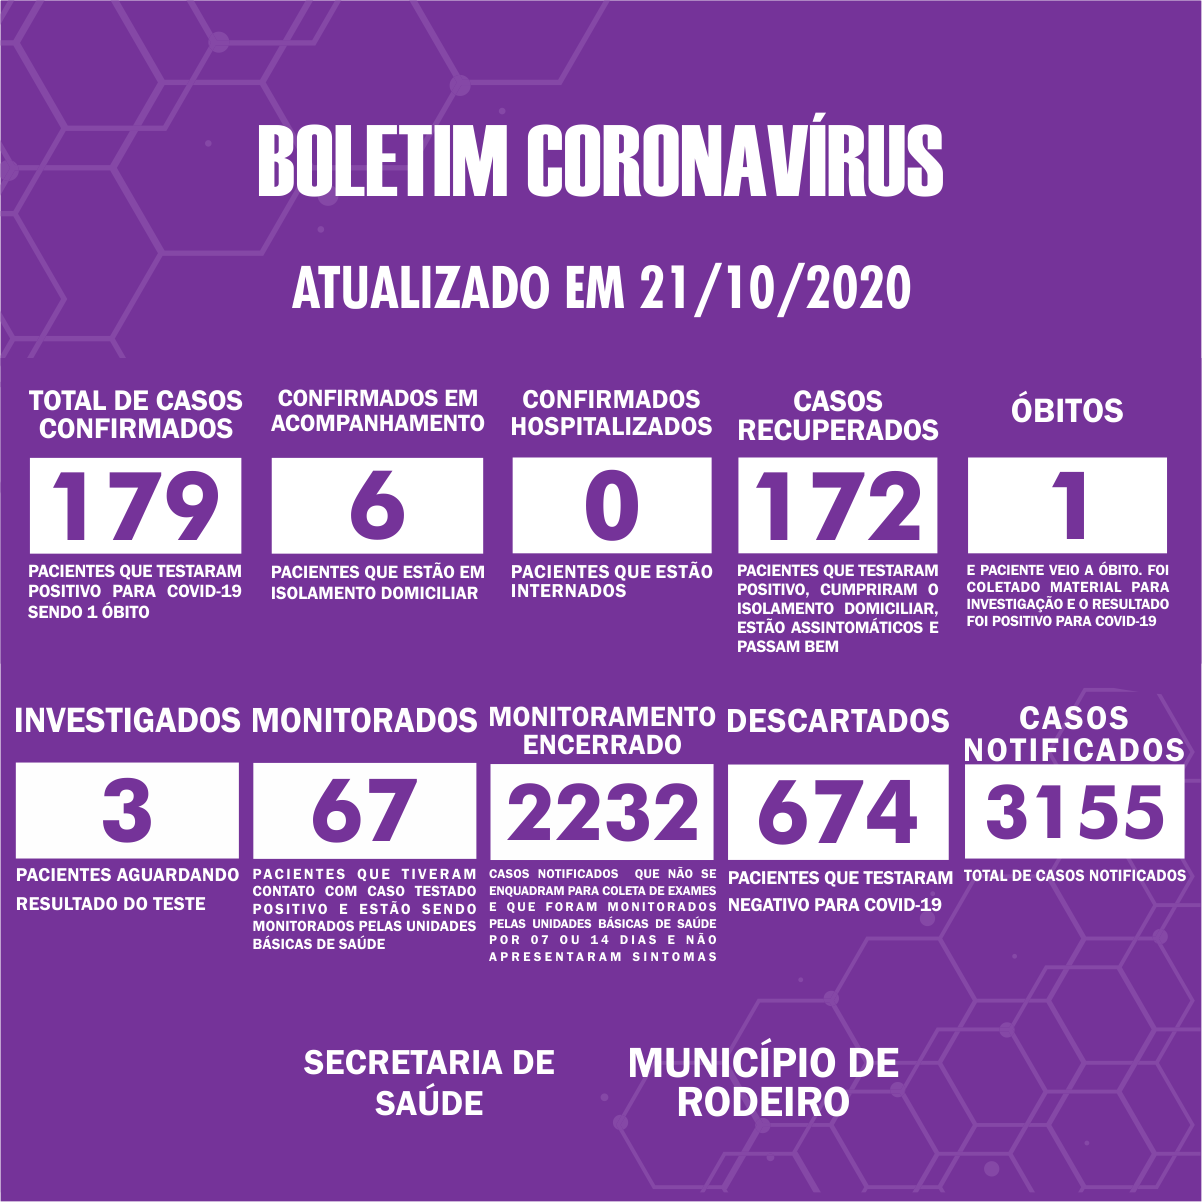 Boletim Epidemiológico do Município de Rodeiro sobre coronavírus, atualizado em 21/10/2020